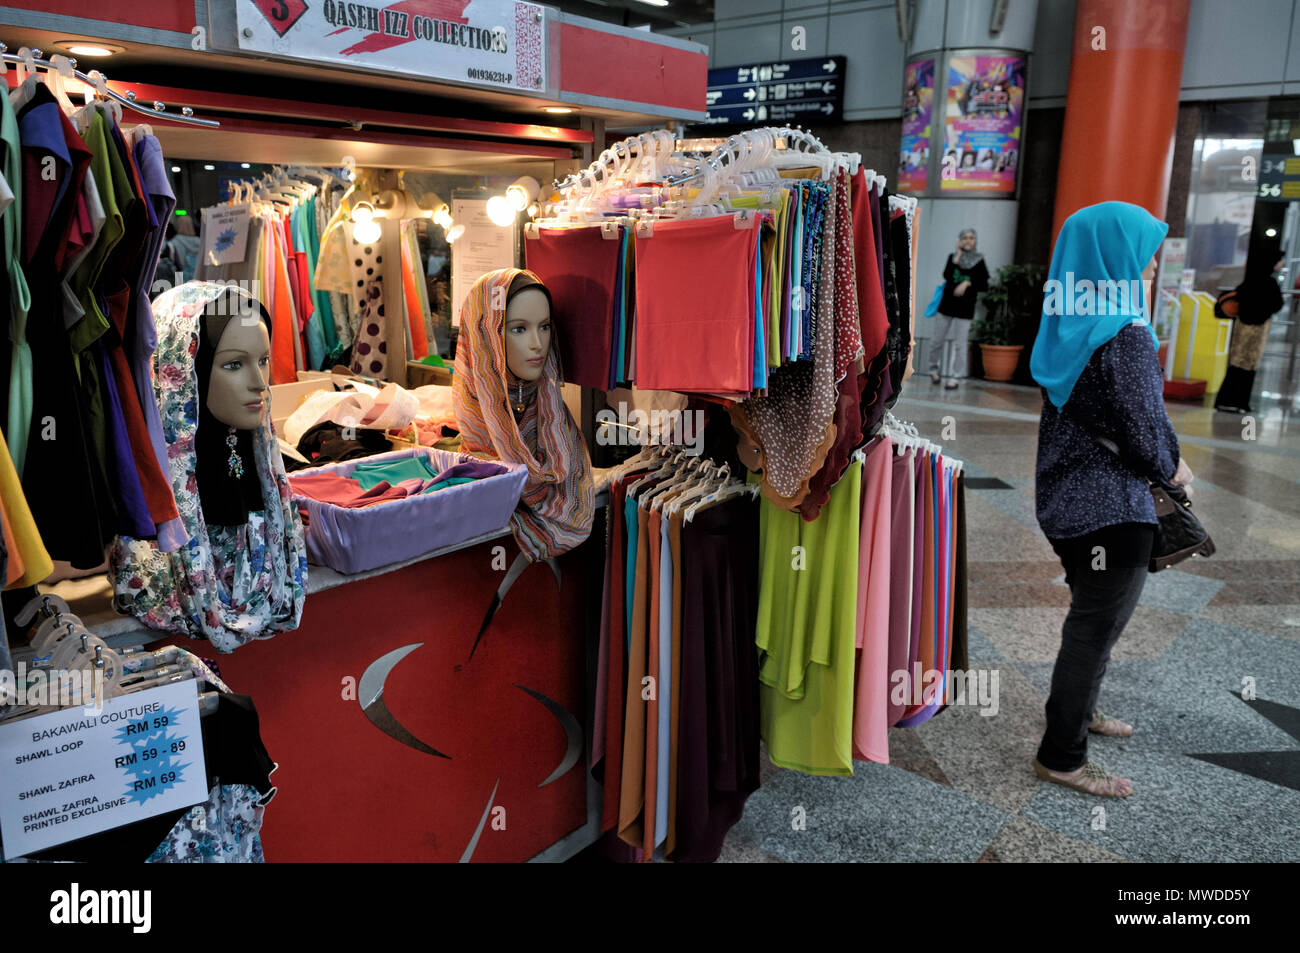 Piccolo negozio di hijabs (veli islamici) di Kuala Lumpur in Malesia Foto Stock